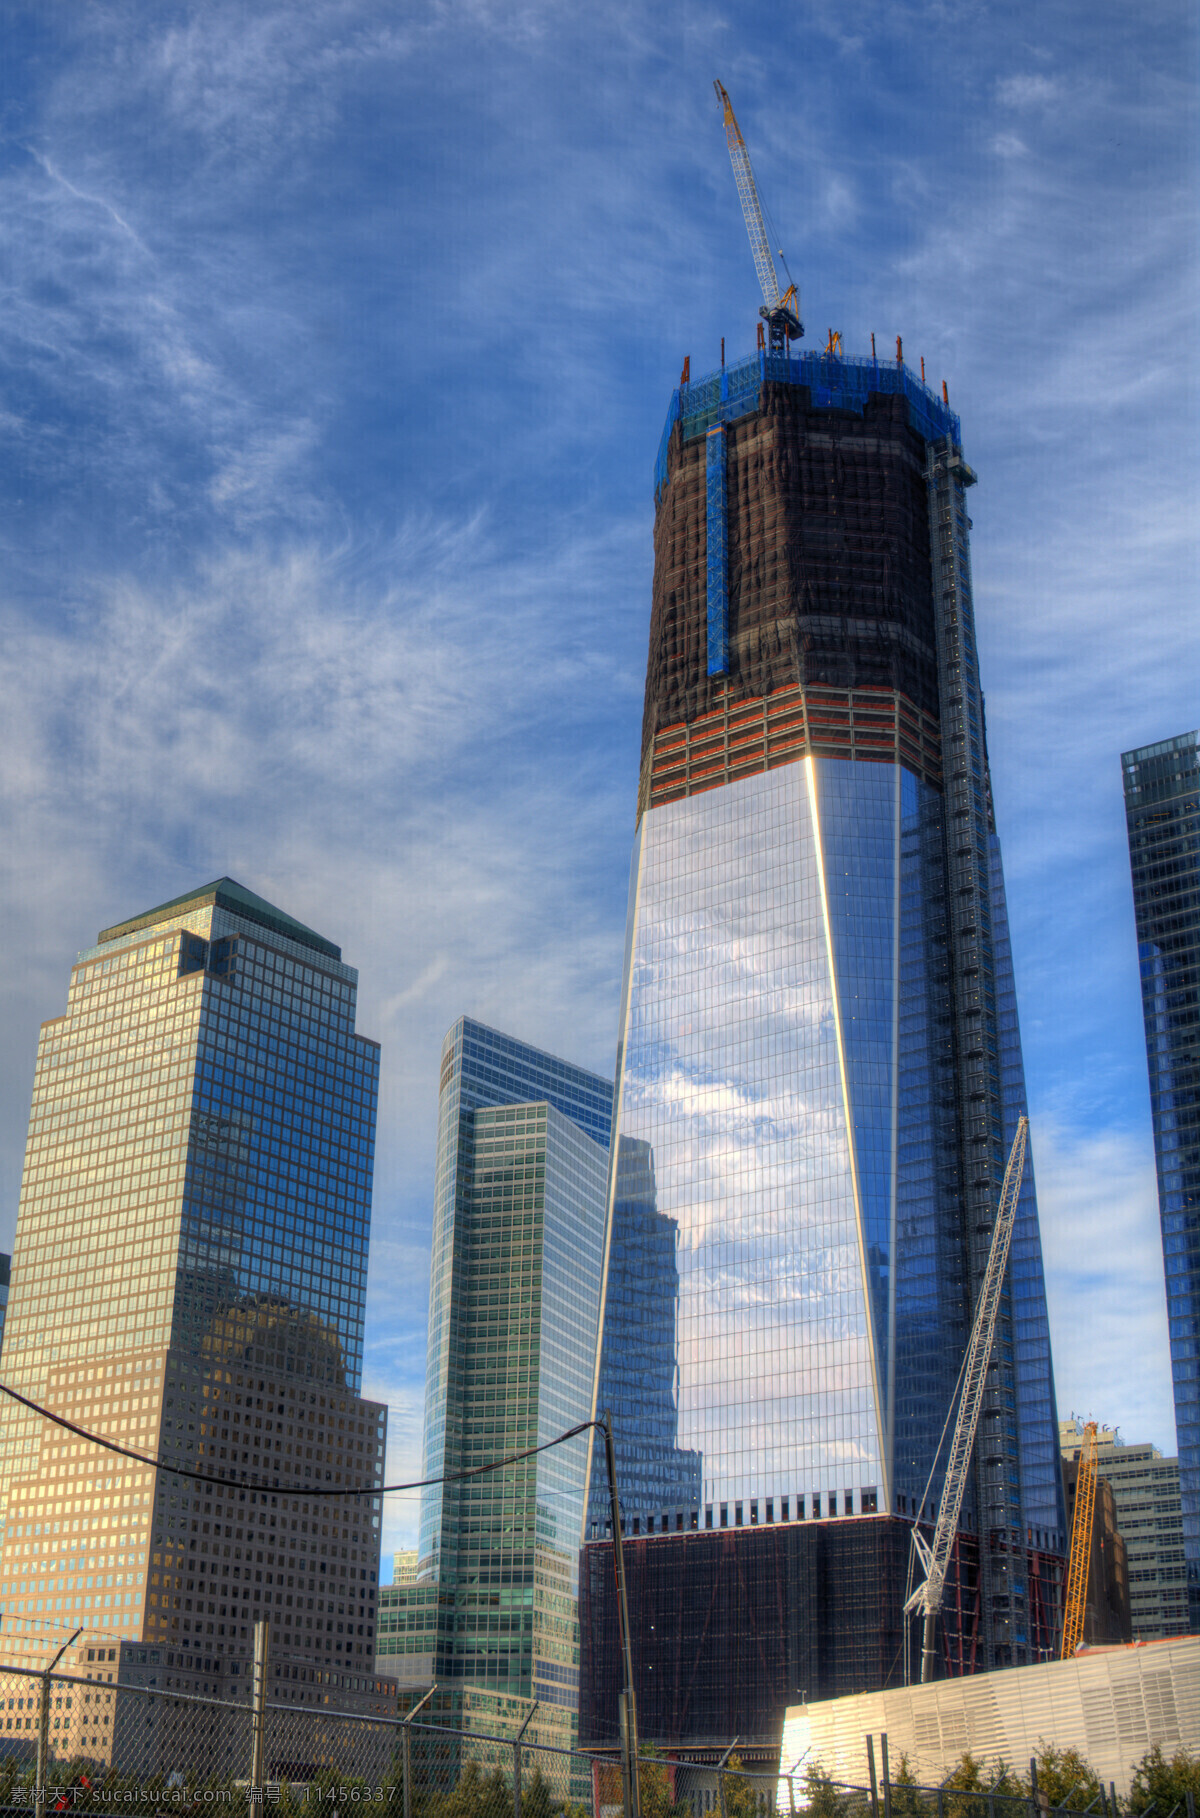 纽约 新 世贸 中心 大厦 建设 中 曼哈顿风景 纽约风景 美丽风景 高楼大厦 摩天大楼 繁华都市 美丽城市风景 城市风光 环境家居 蓝色